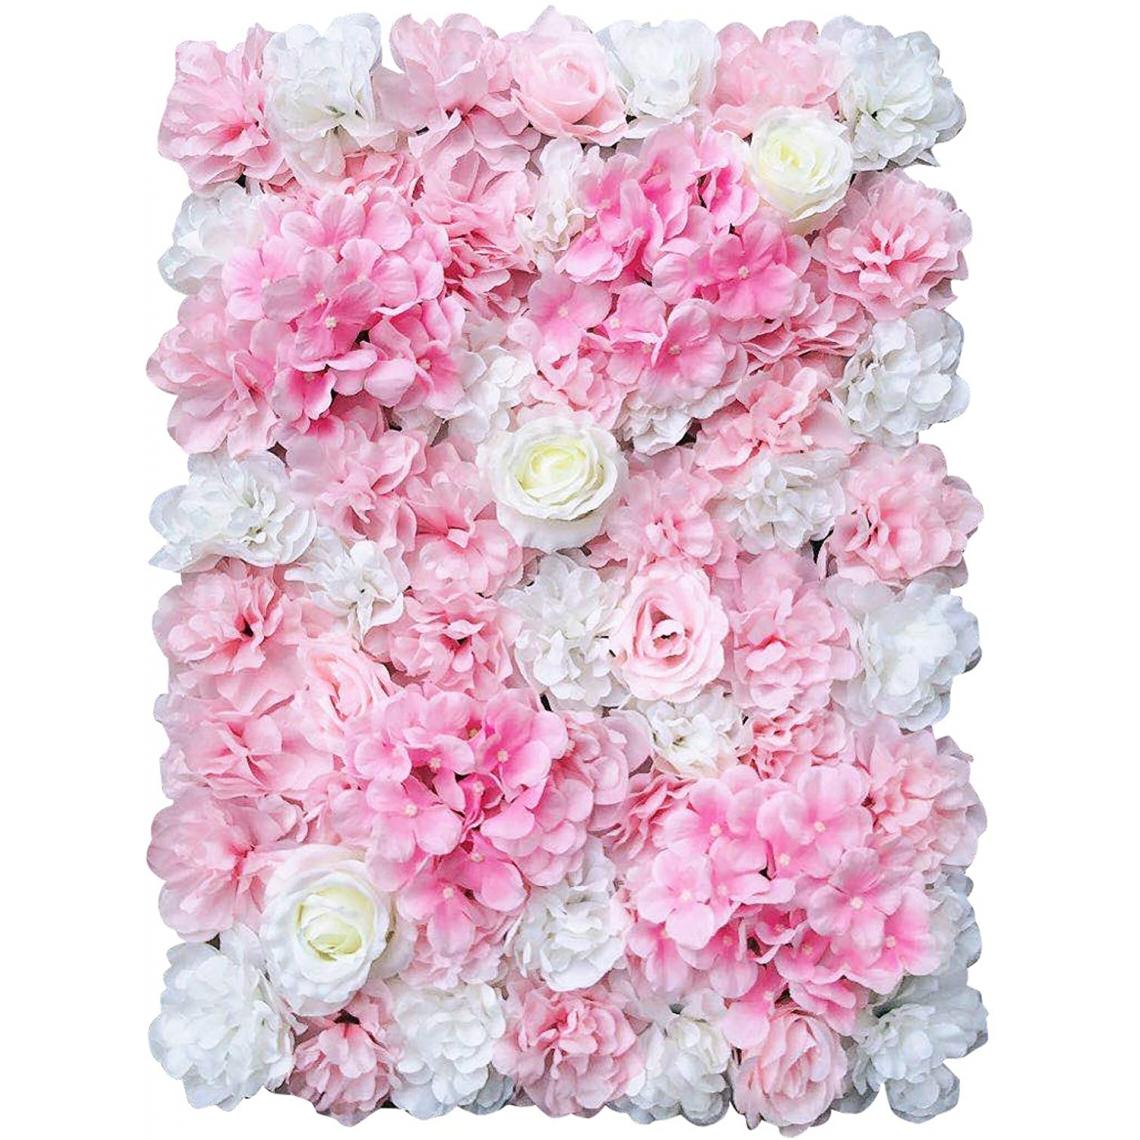 Oukaning - Lot de 12 panneaux muraux de fleurs artificielles pour décoration de jardin, maison, mariage, fête - 40 x 60 cm - Plantes et fleurs artificielles